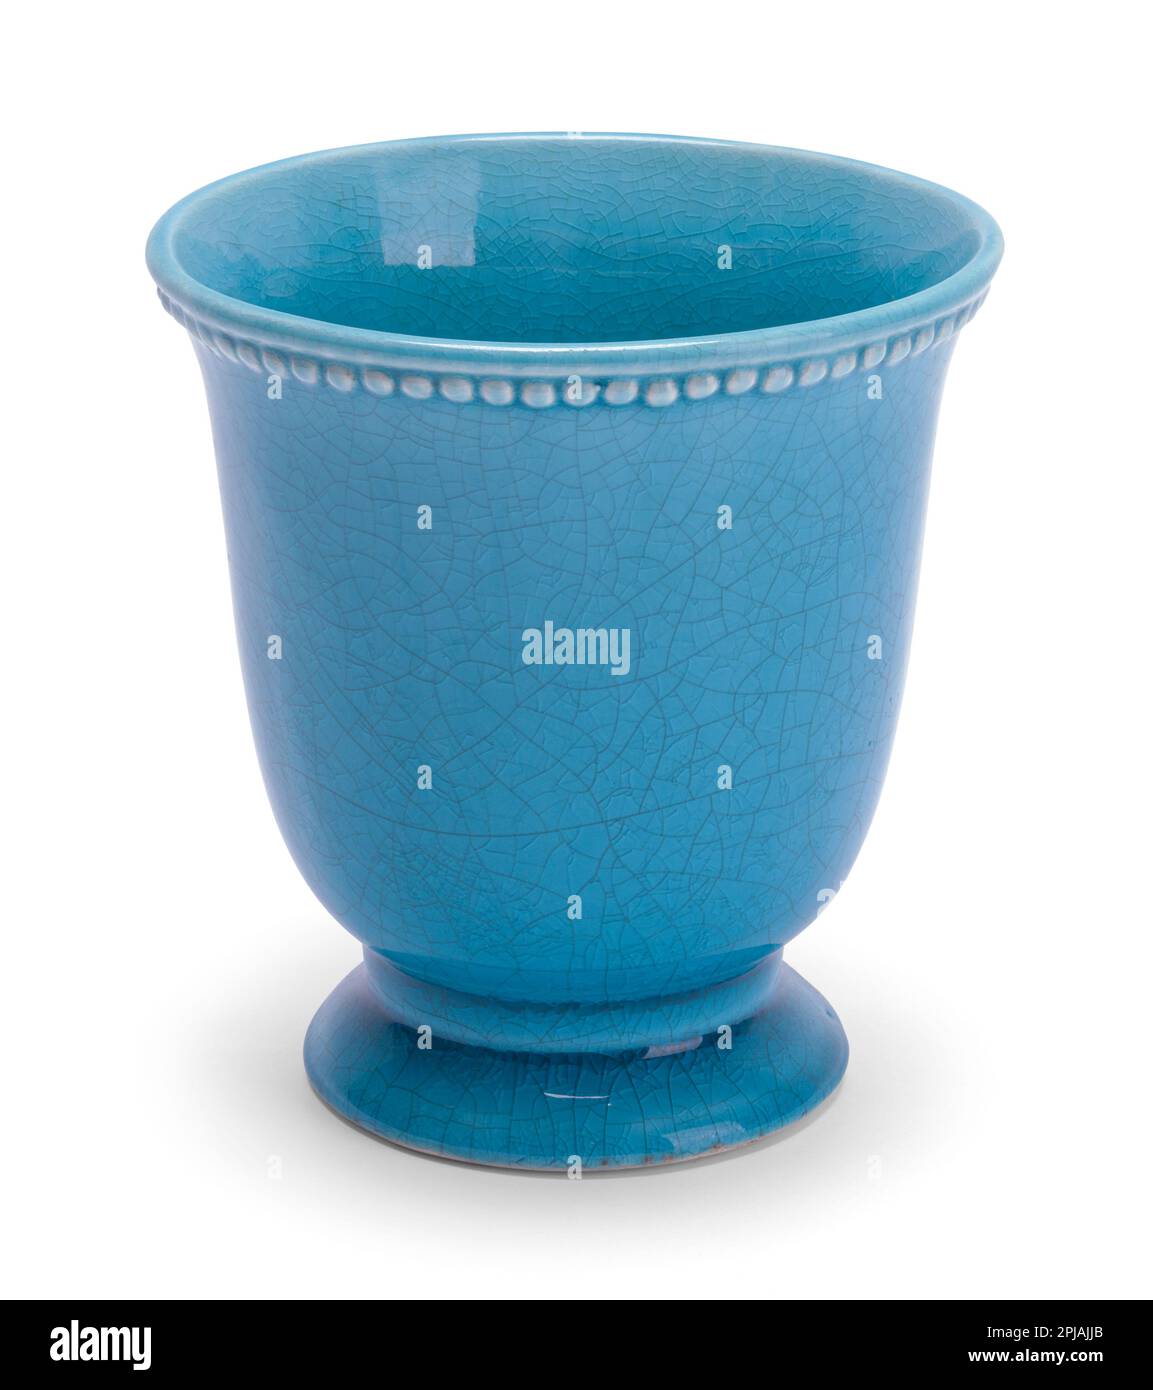 Kleine Vase in Aqua Blue, ausgeschnitten auf Weiß. Stockfoto